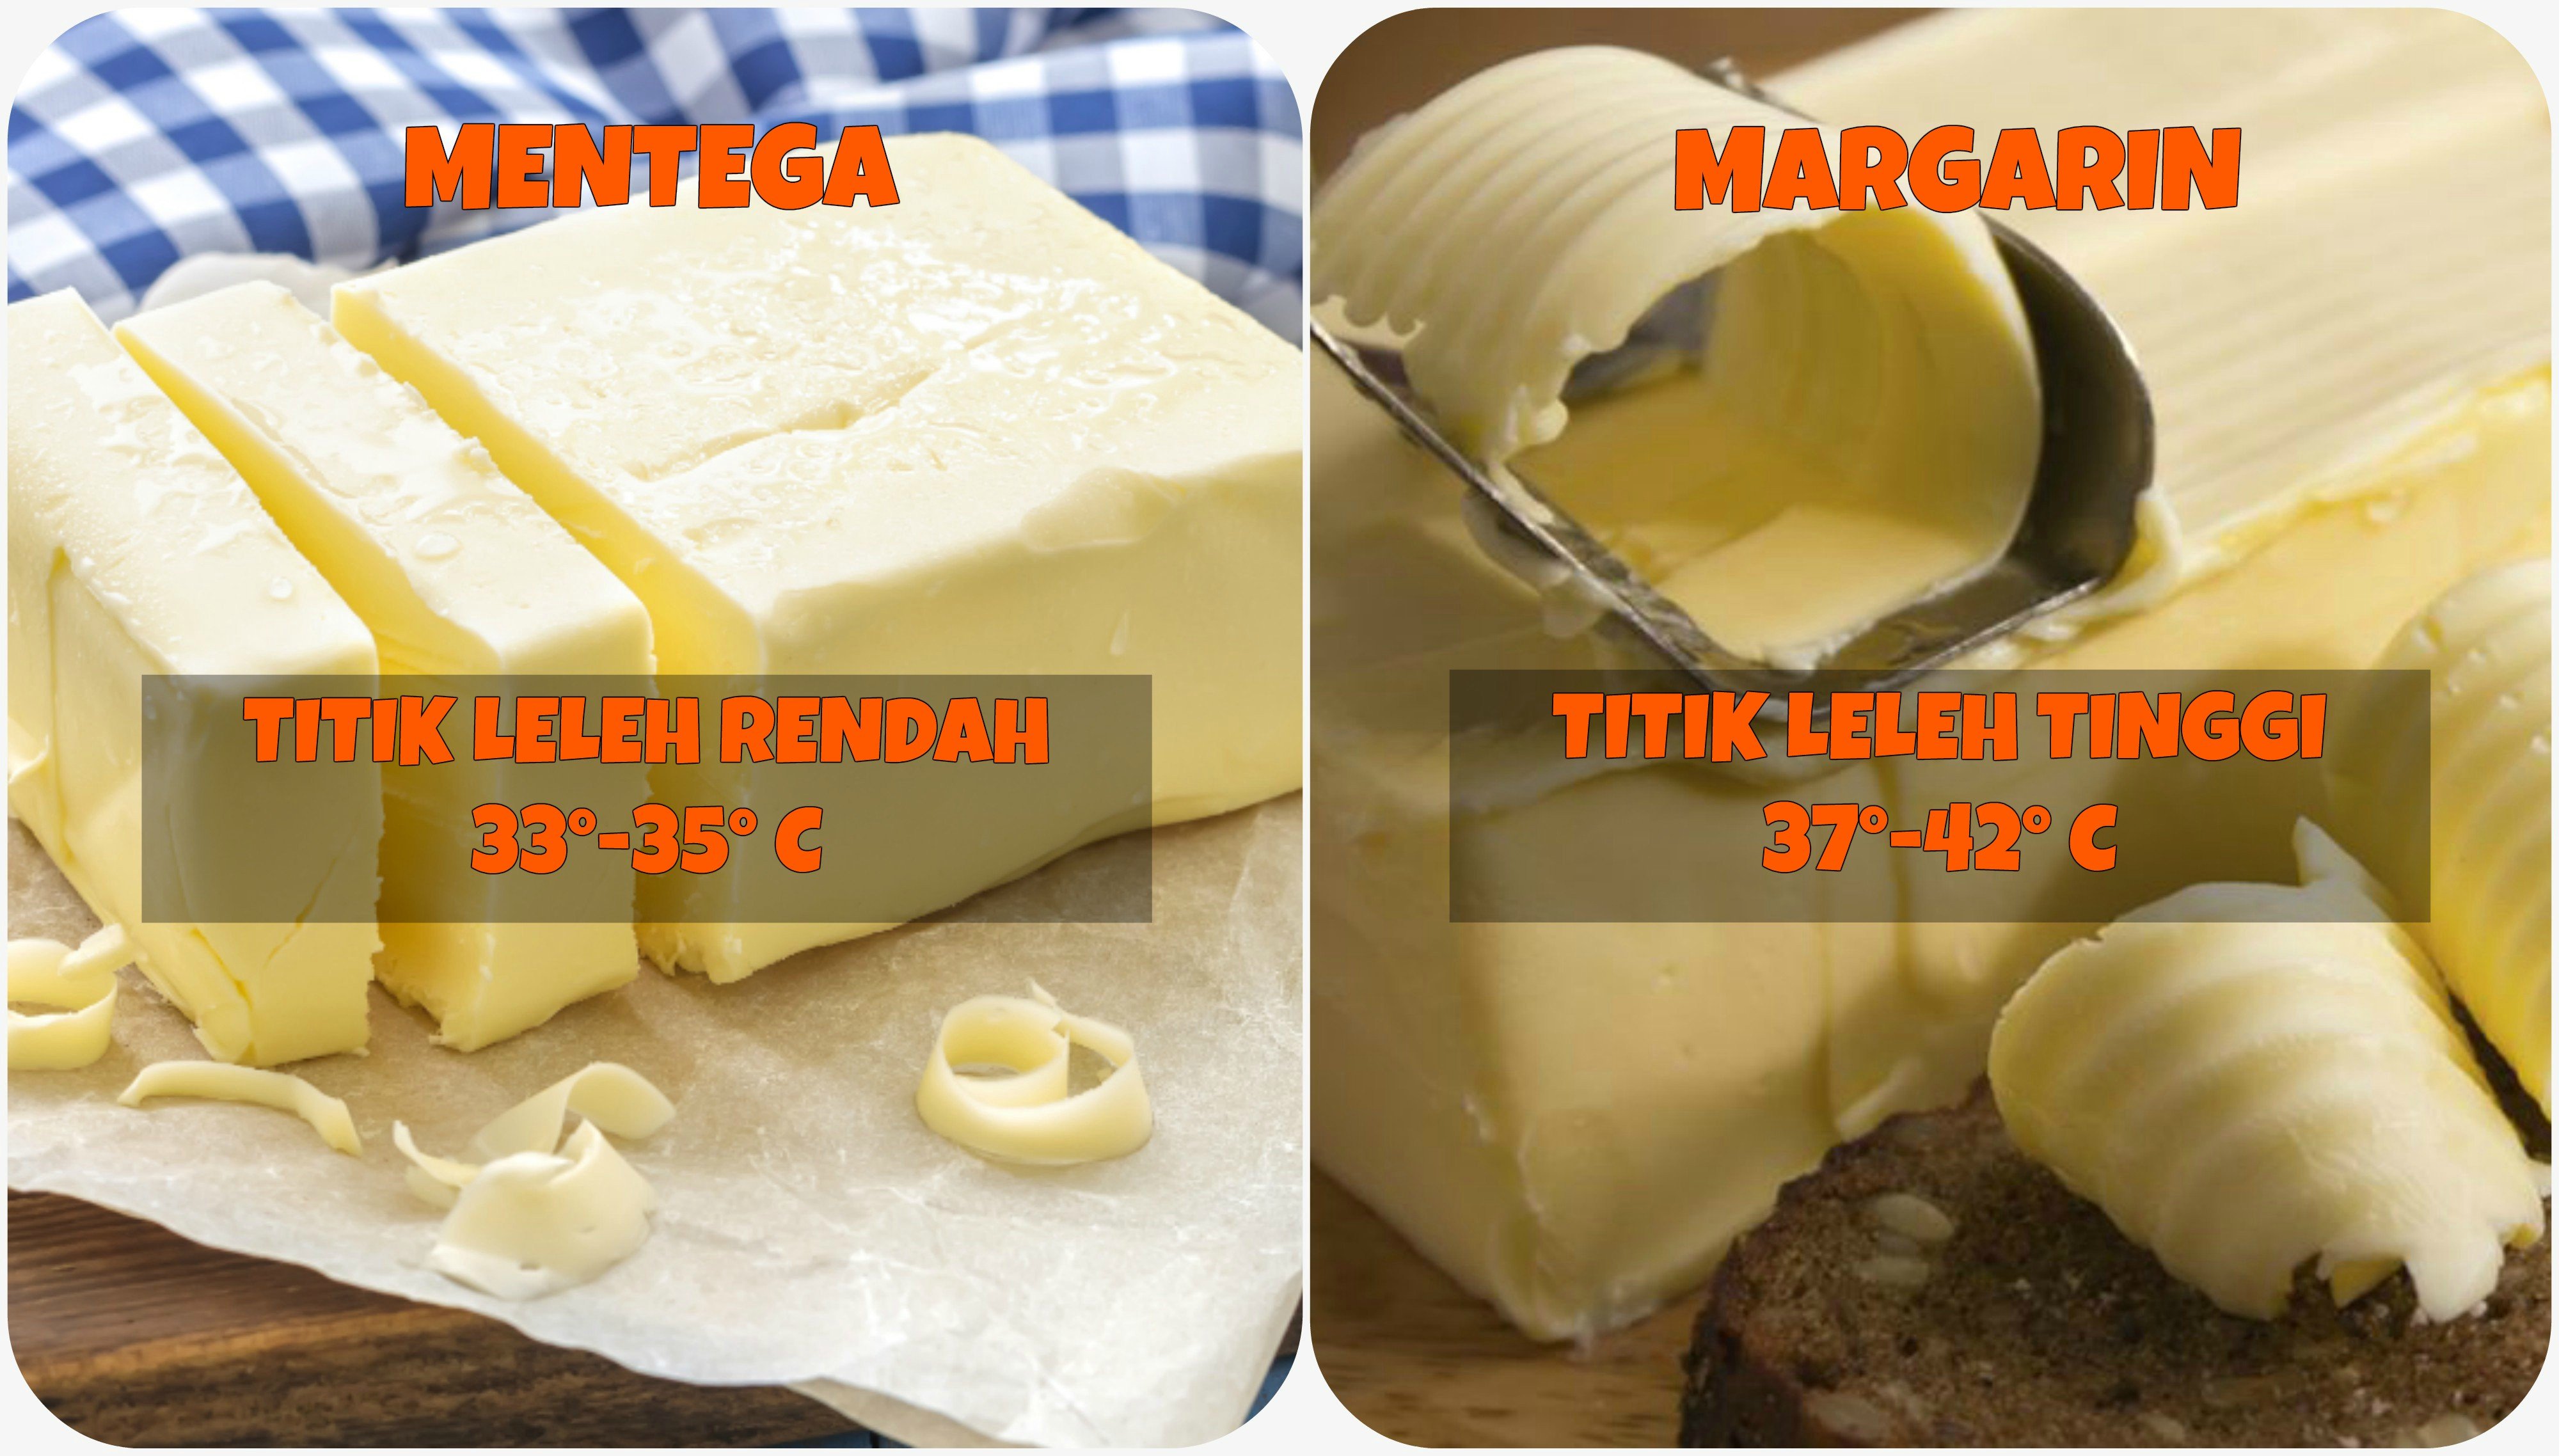 Perbedaan keawetan Mentega dan Margarin